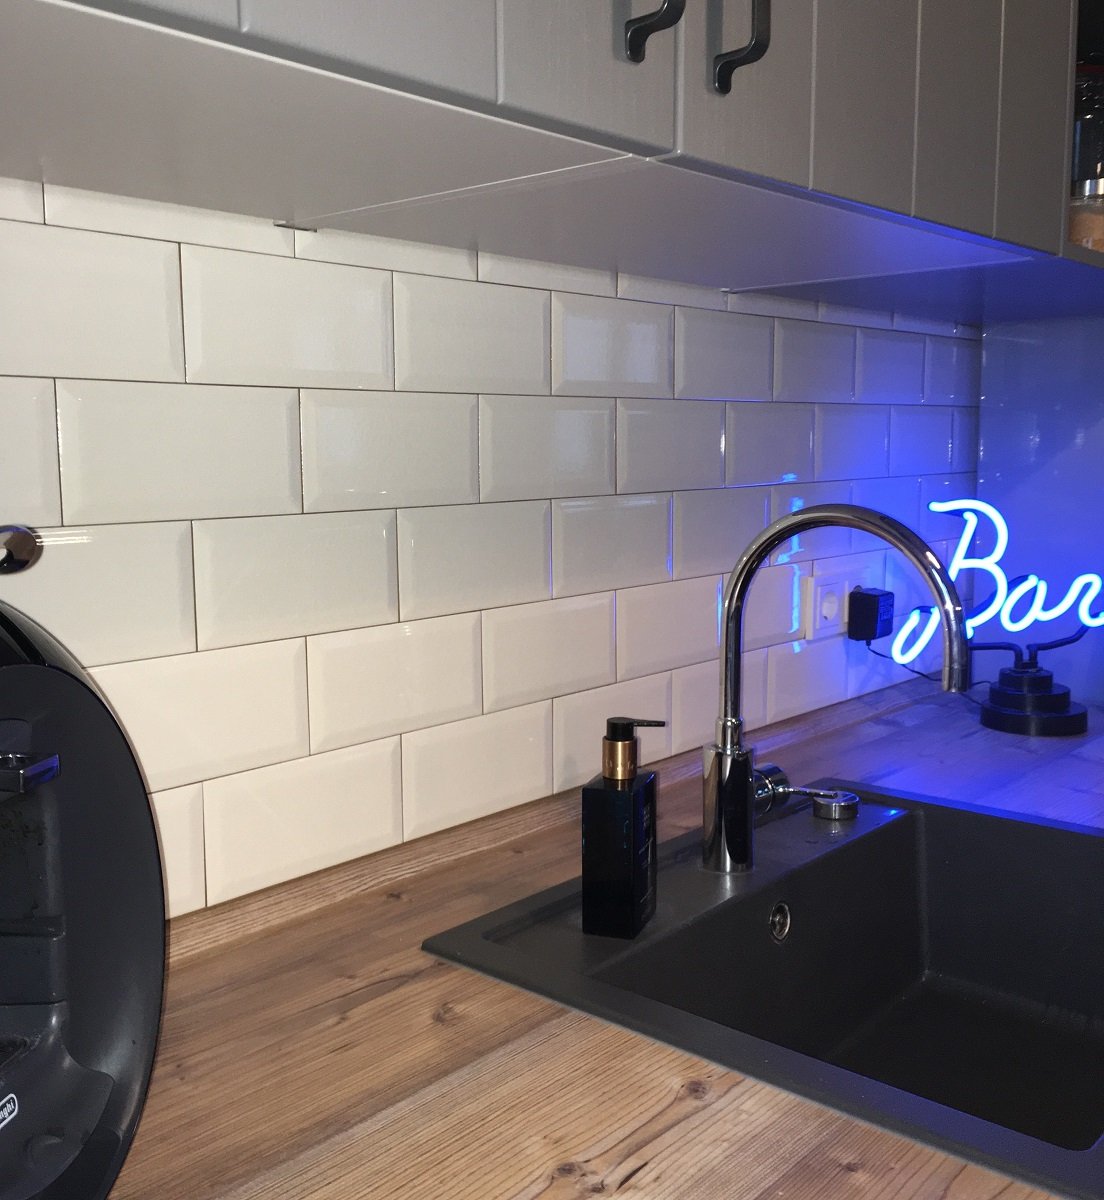 Metro Fliese krakeliert für Küche Bad Craquelé Krakelee creme-weiß glänzend Facettenfliese